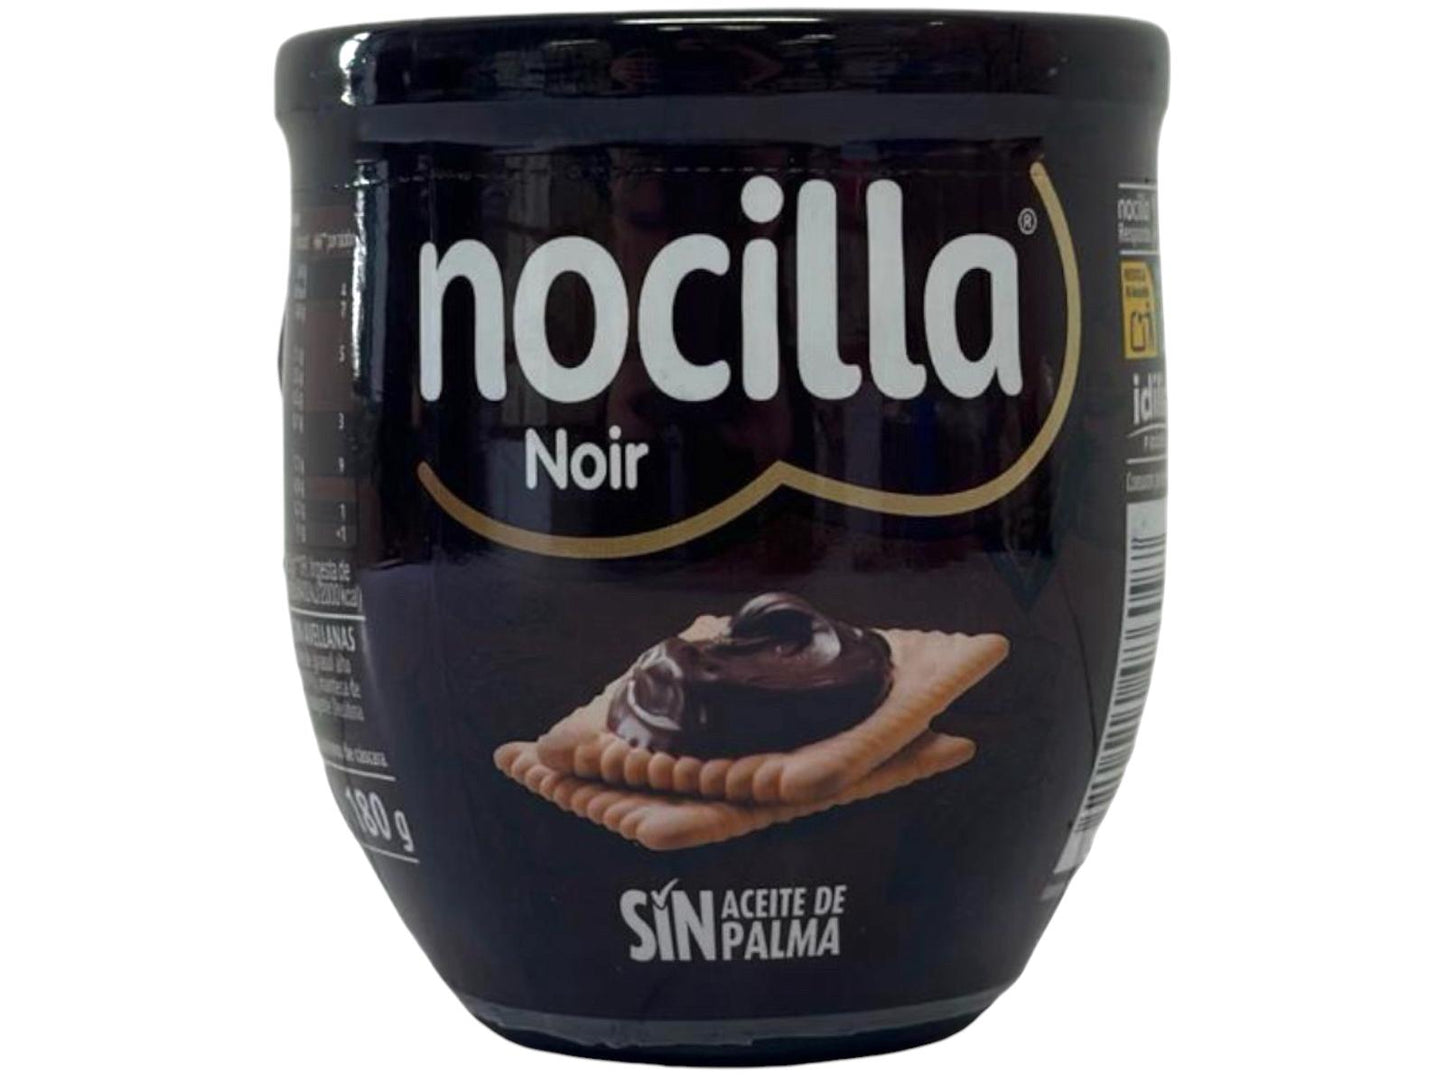 Nocilla Noir 180g